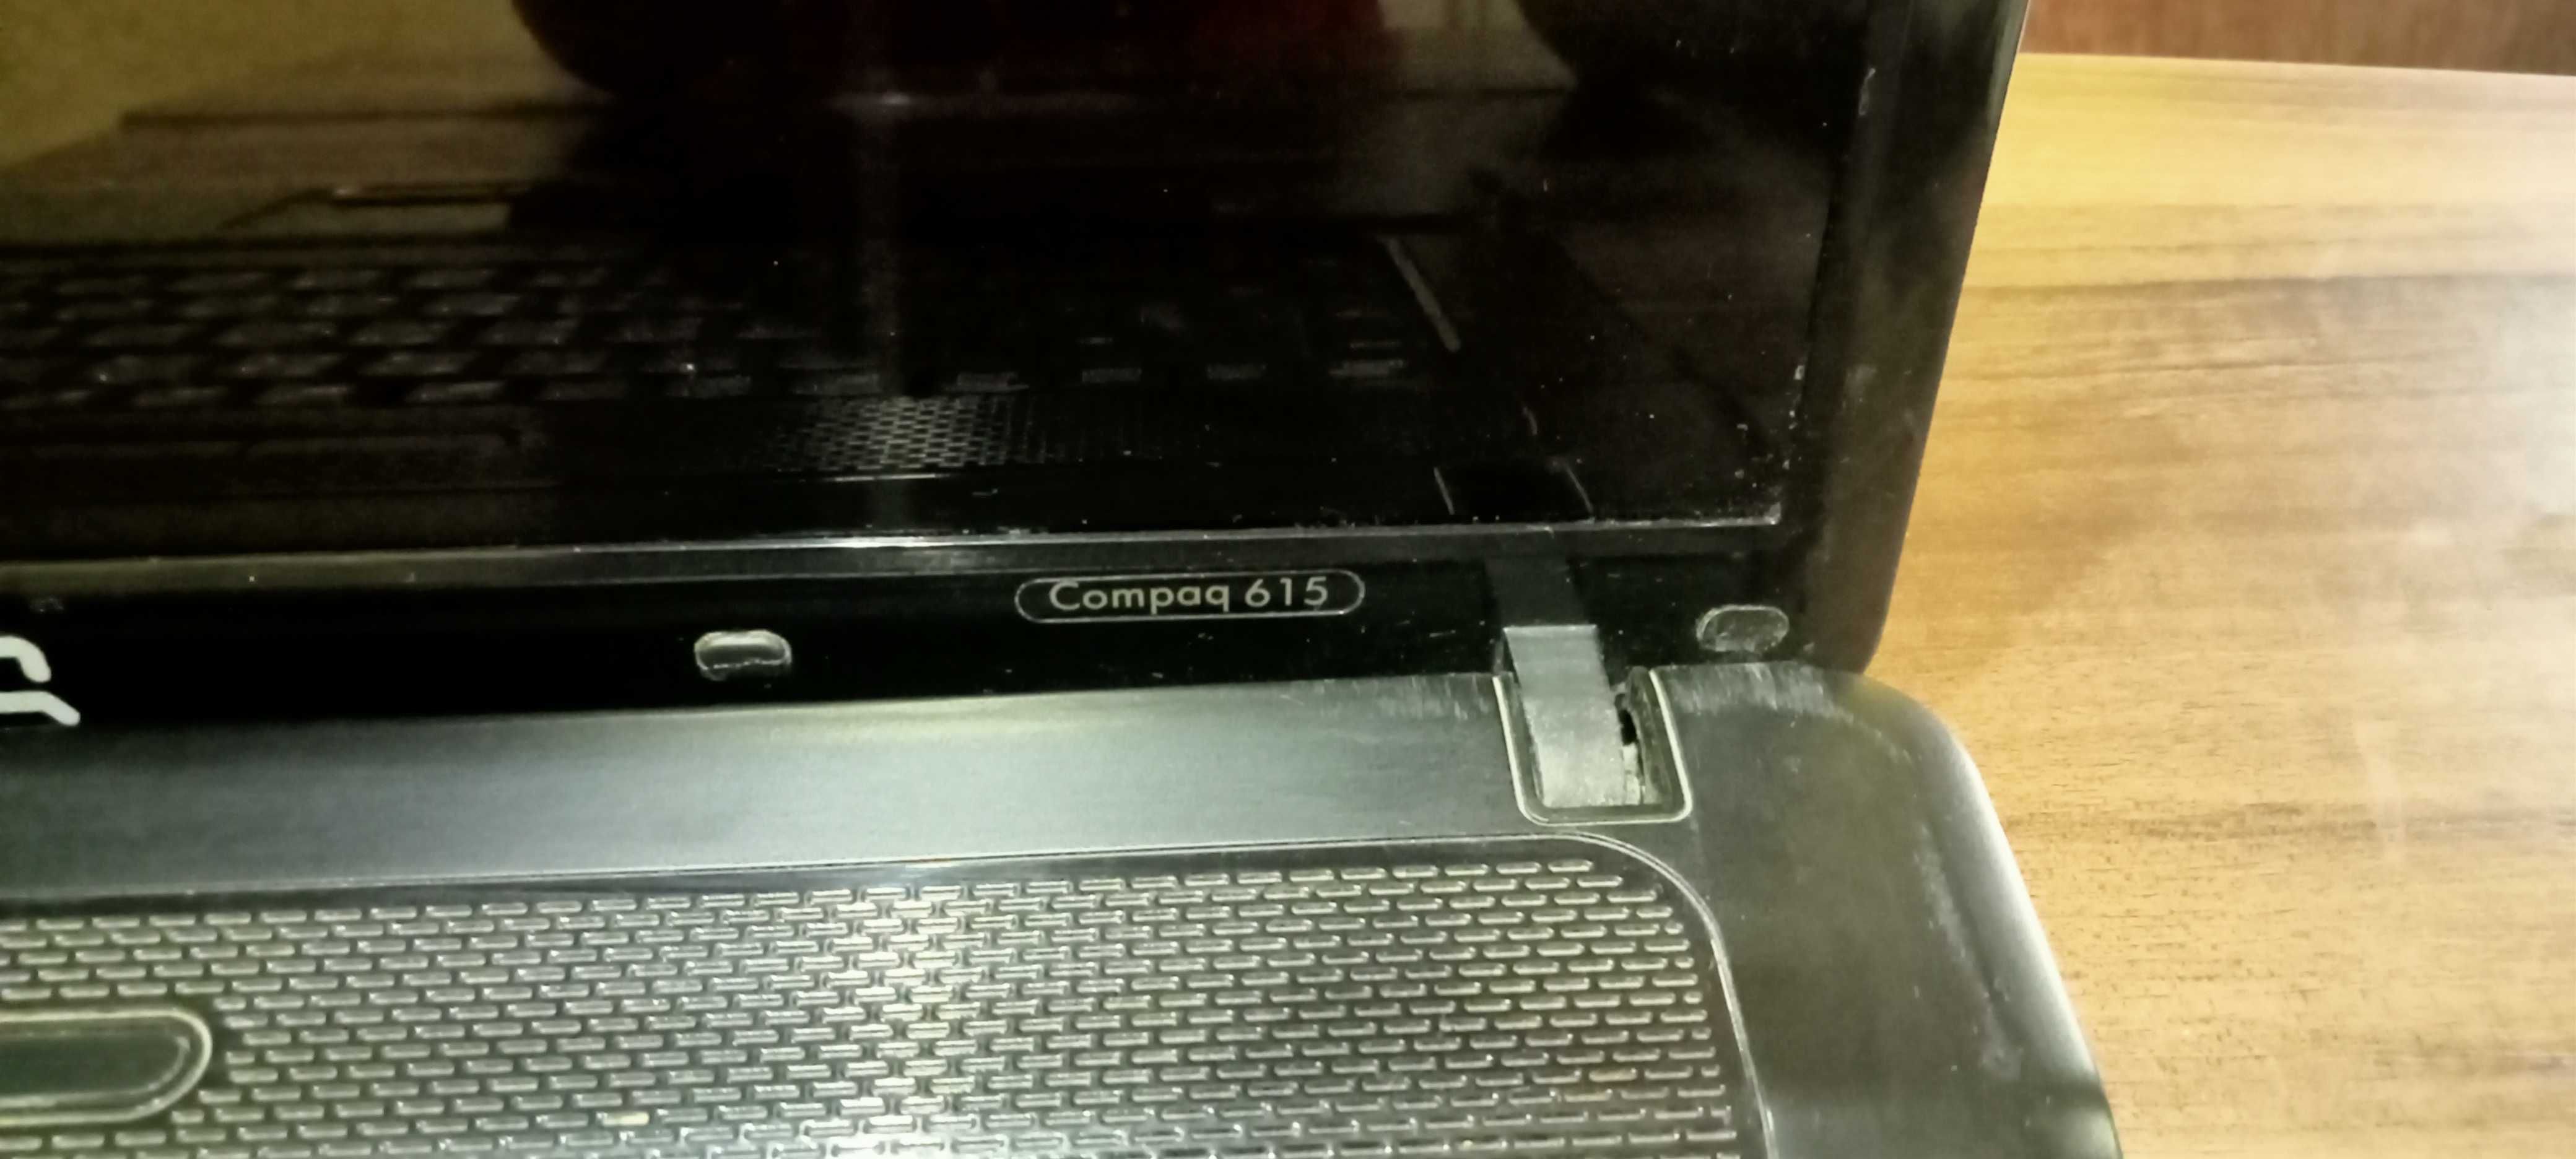 продам ноутбук HP compaq 615